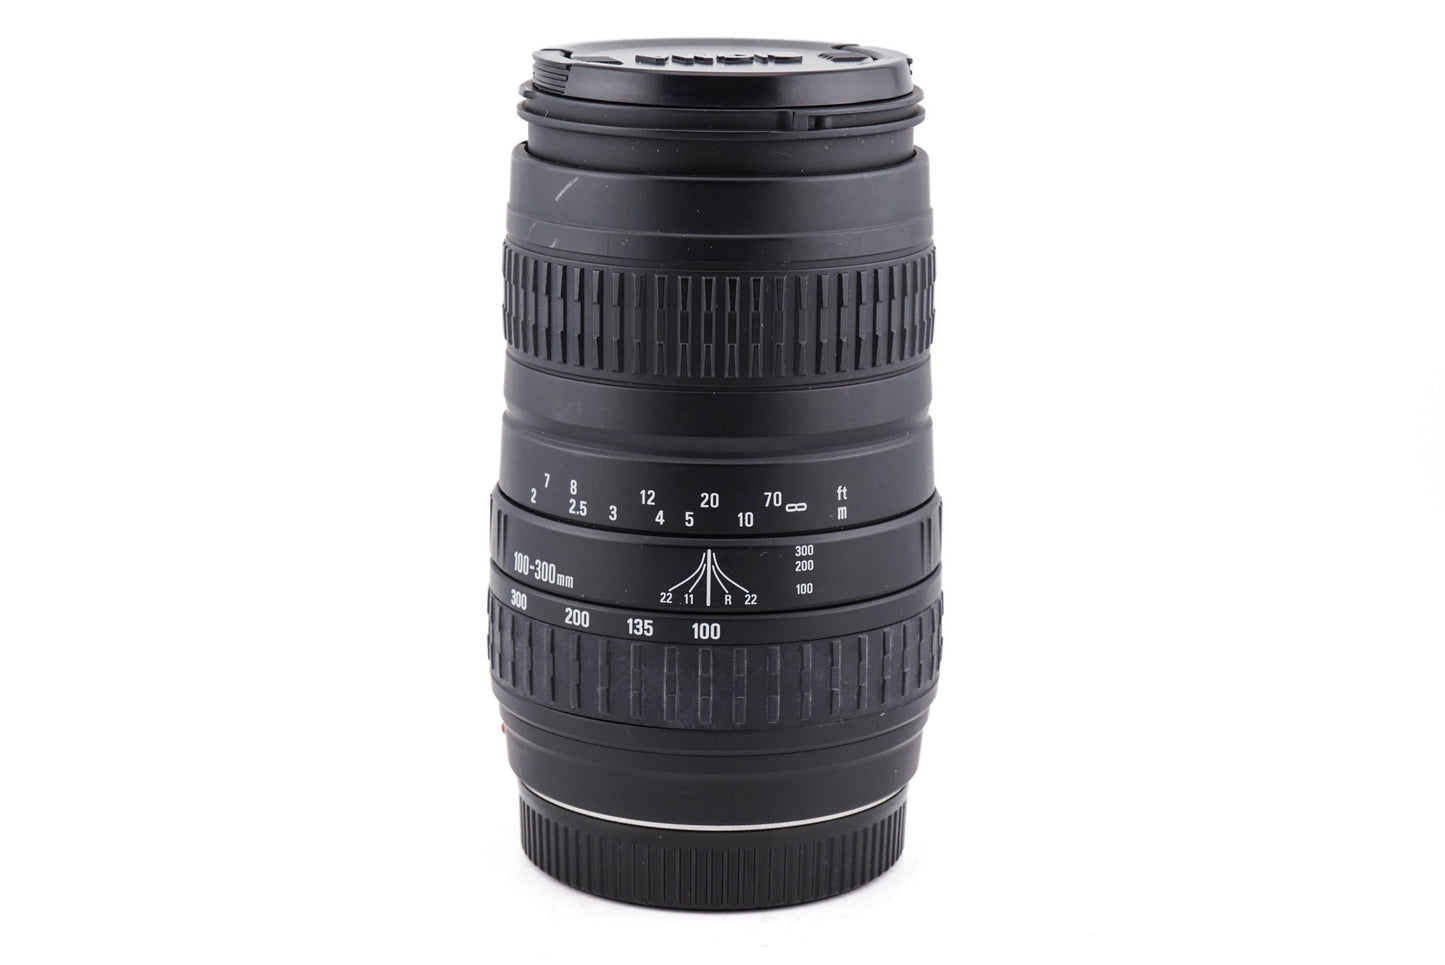 Sigma 100-300mm f4.5 - 6.7 DL - Lens